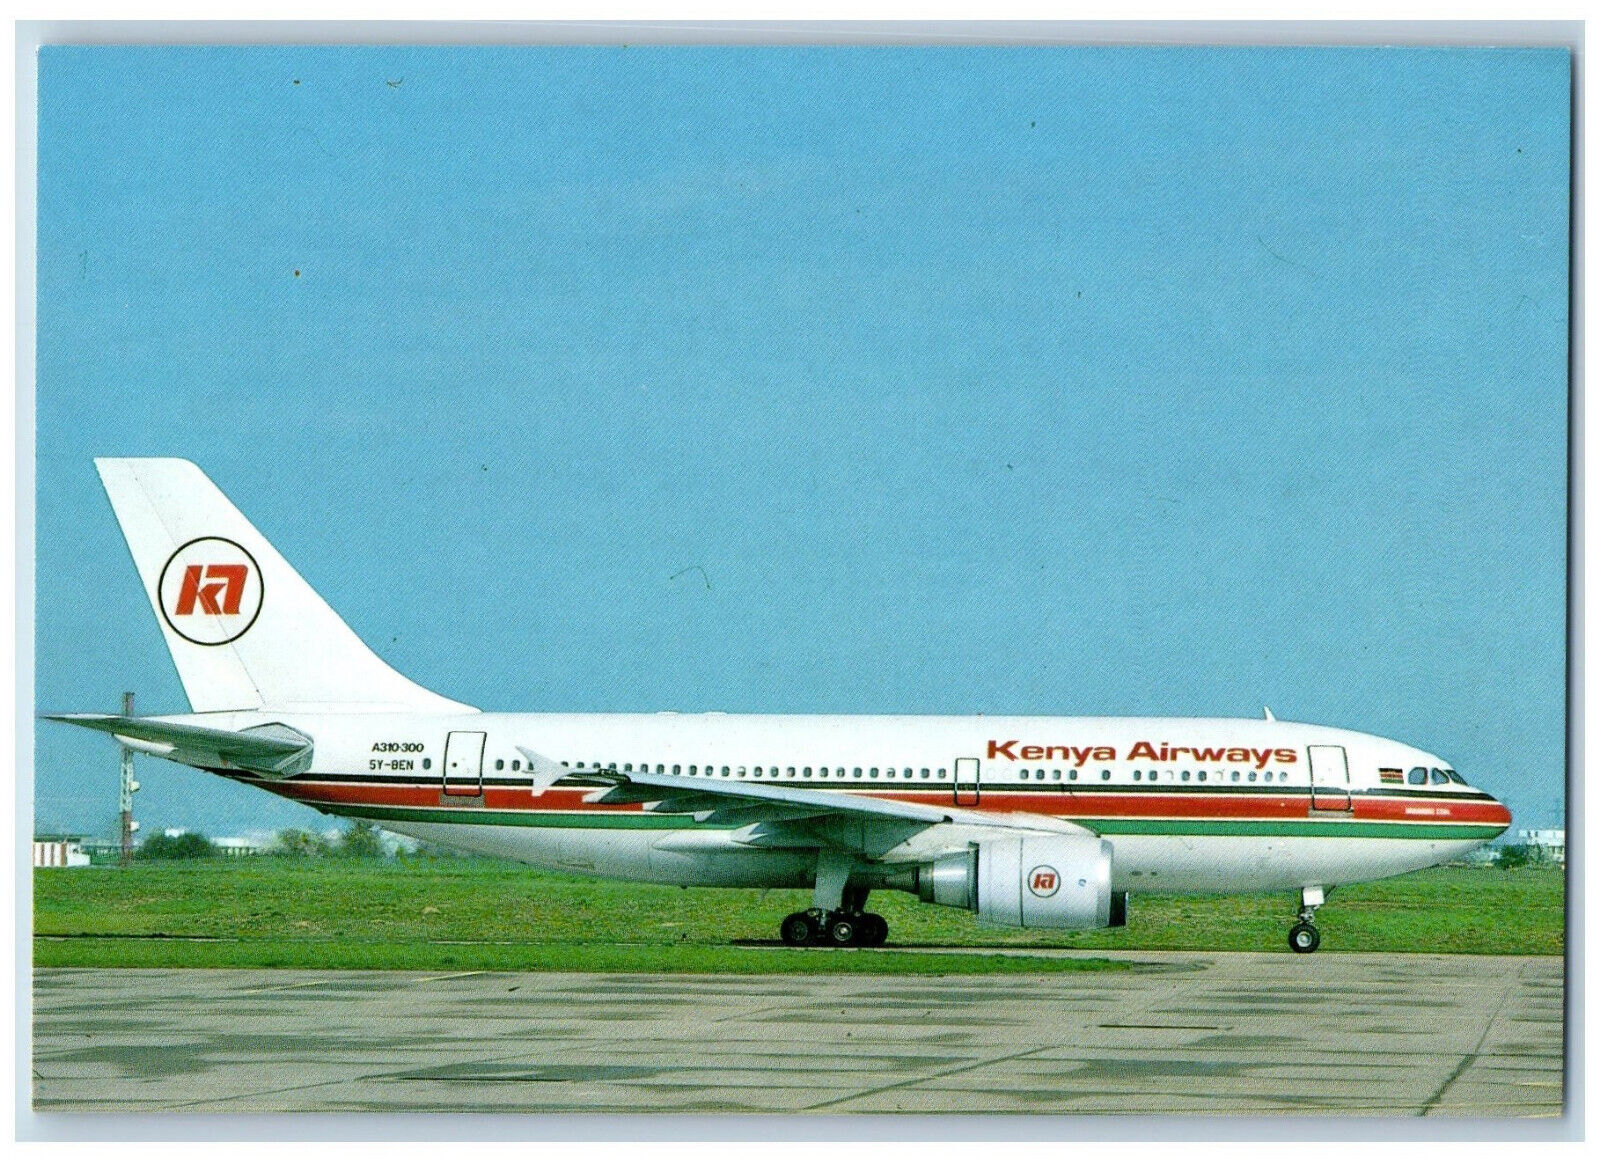 Paris France Postcard Kenya Airways Airbus A310-300 (5Y-Ben) c1950's